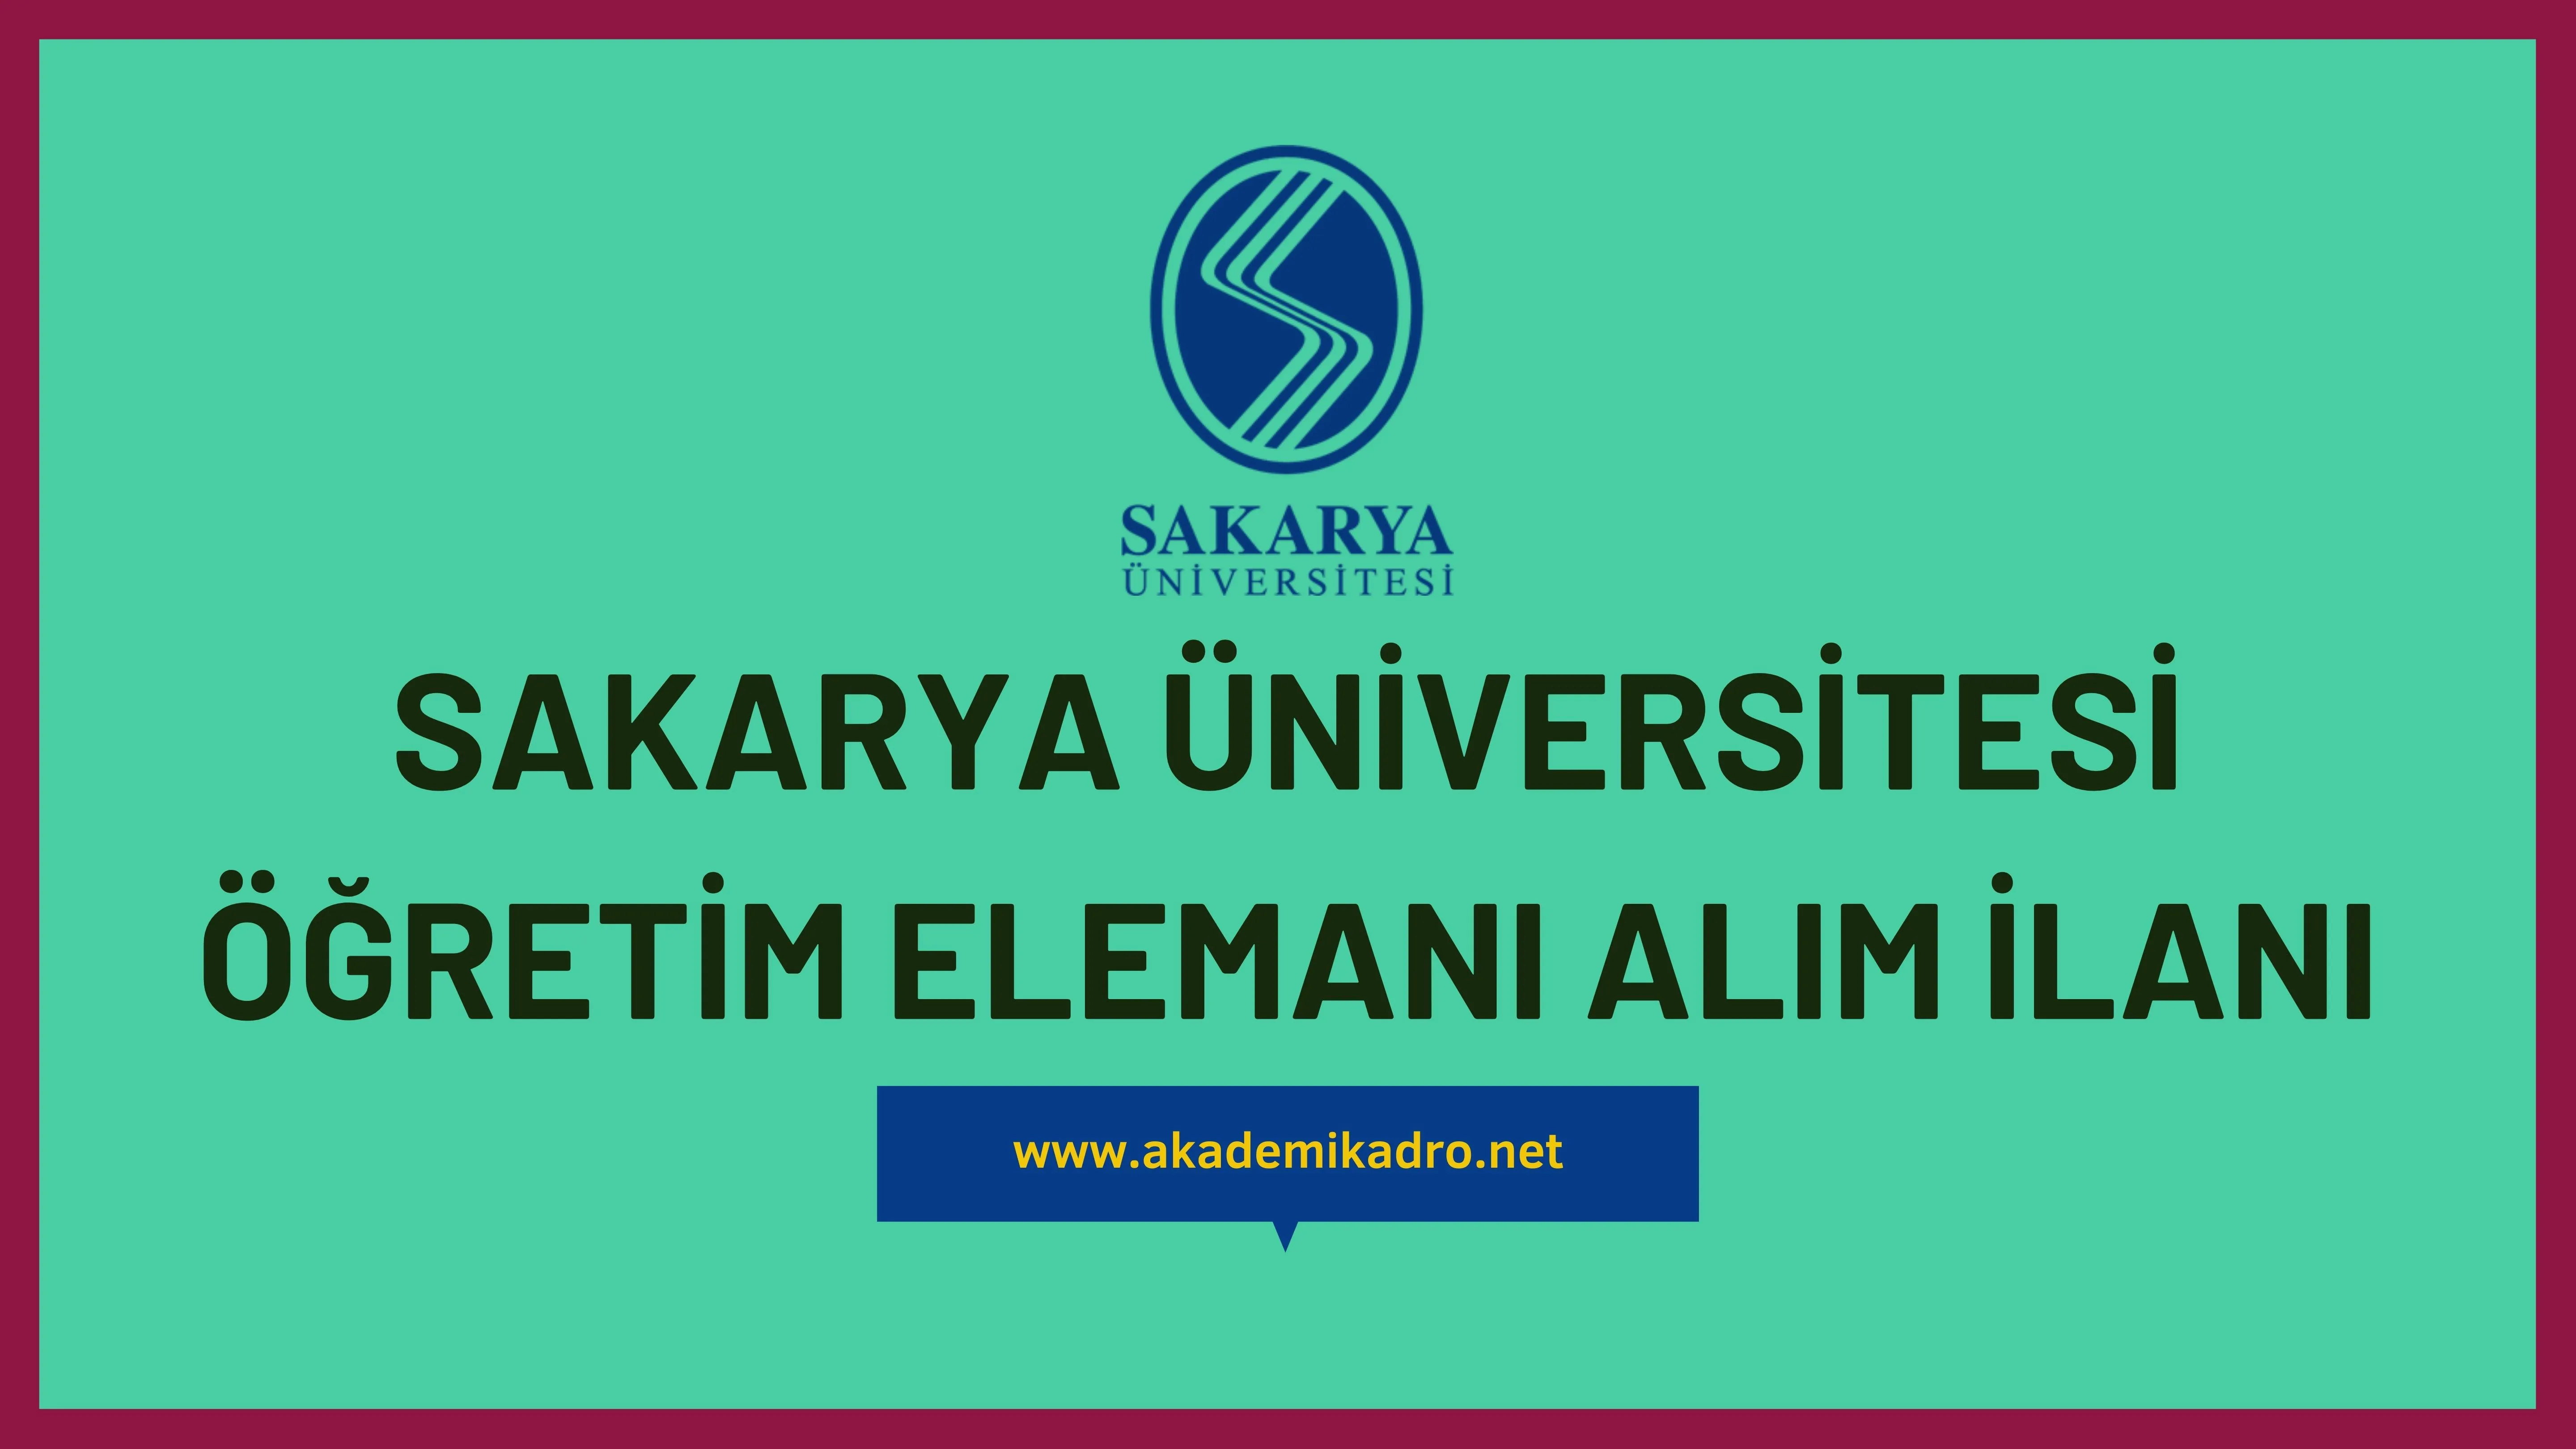 Sakarya Üniversitesi 28 öğretim üyesi ve 3 Öğretim Görevlisi alacaktır. Son başvuru tarihi 20 Aralık 2022